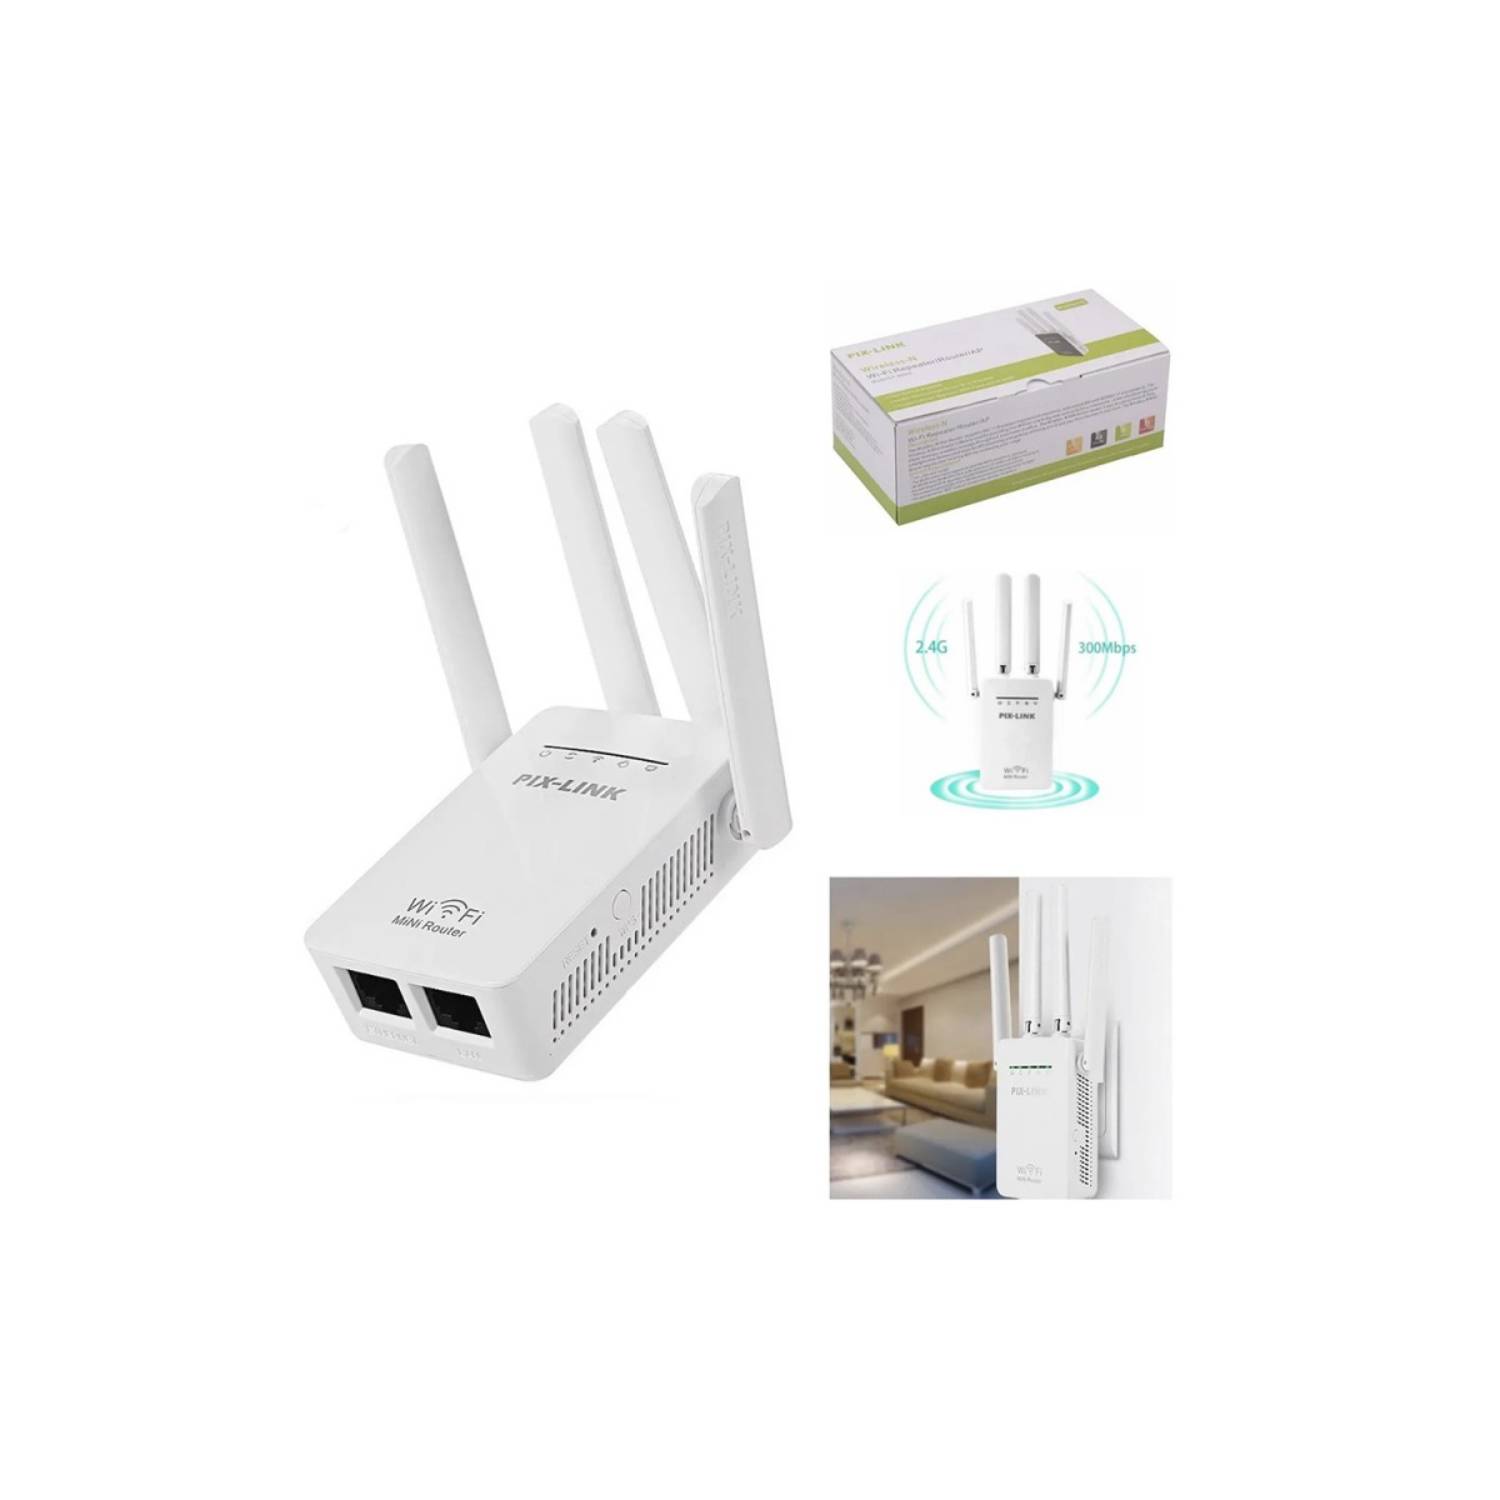 Repetidor Y Router Wifi, Pix-Link, 4 Antenas 300Mbps. En Caja. por mayor  sku:24084